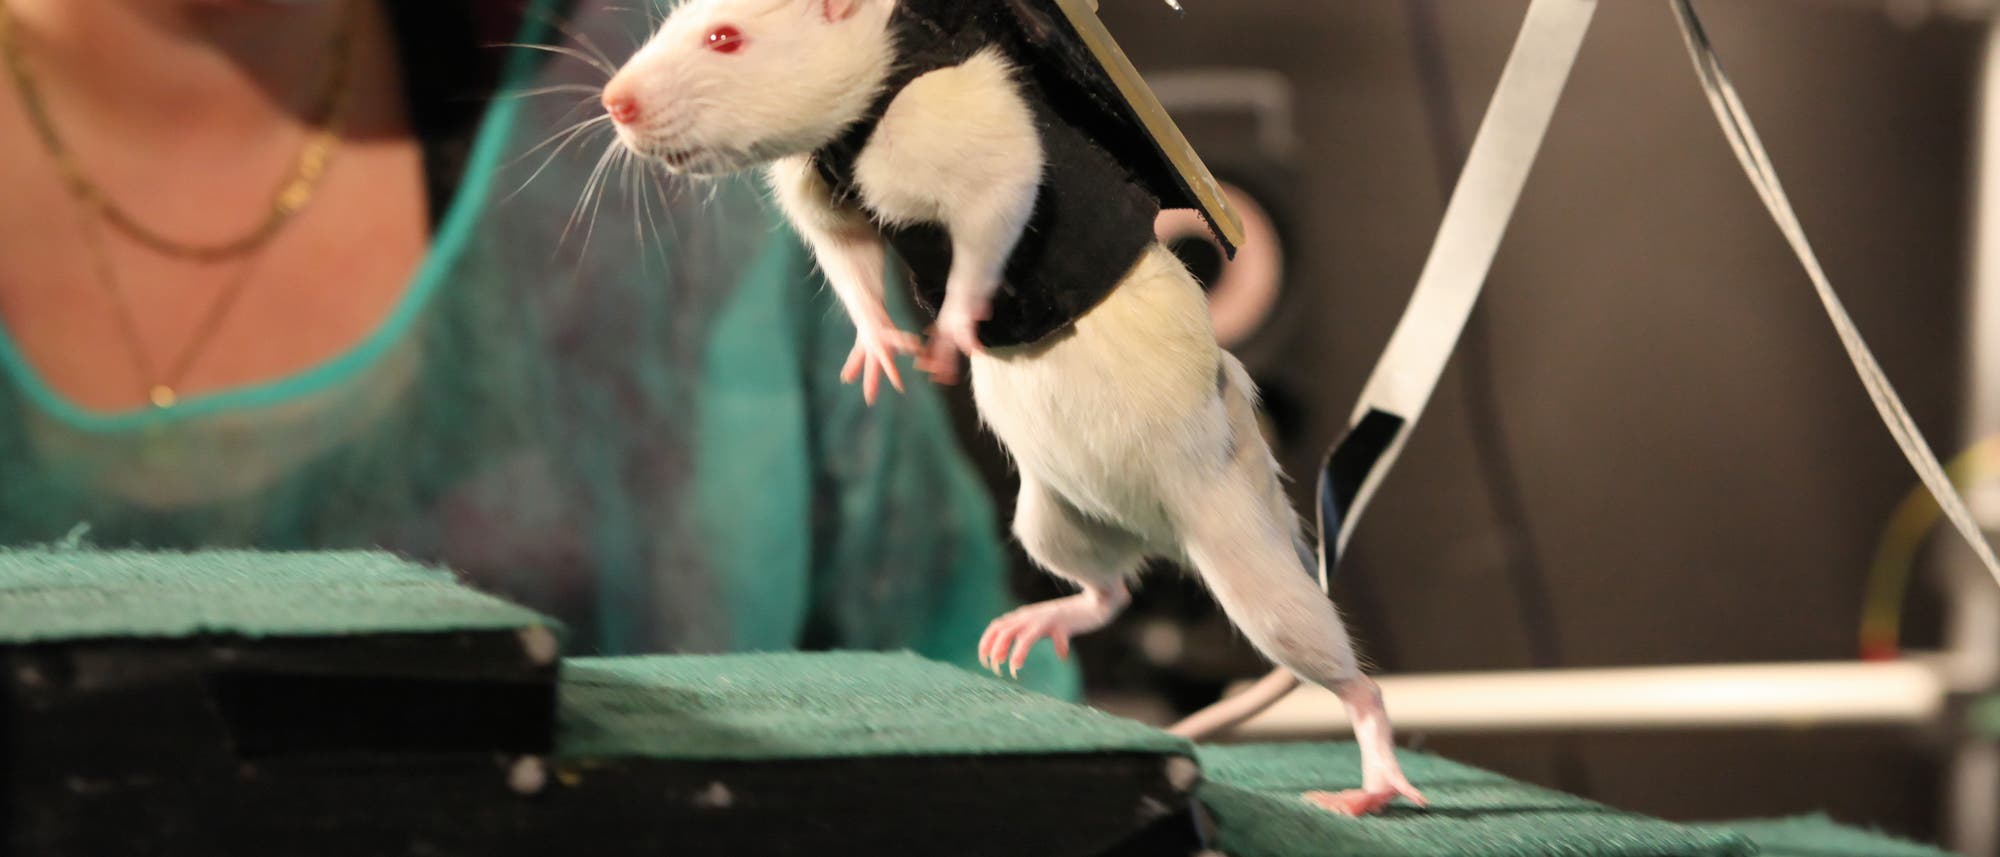 Gelähmte Ratten lernen wieder laufen